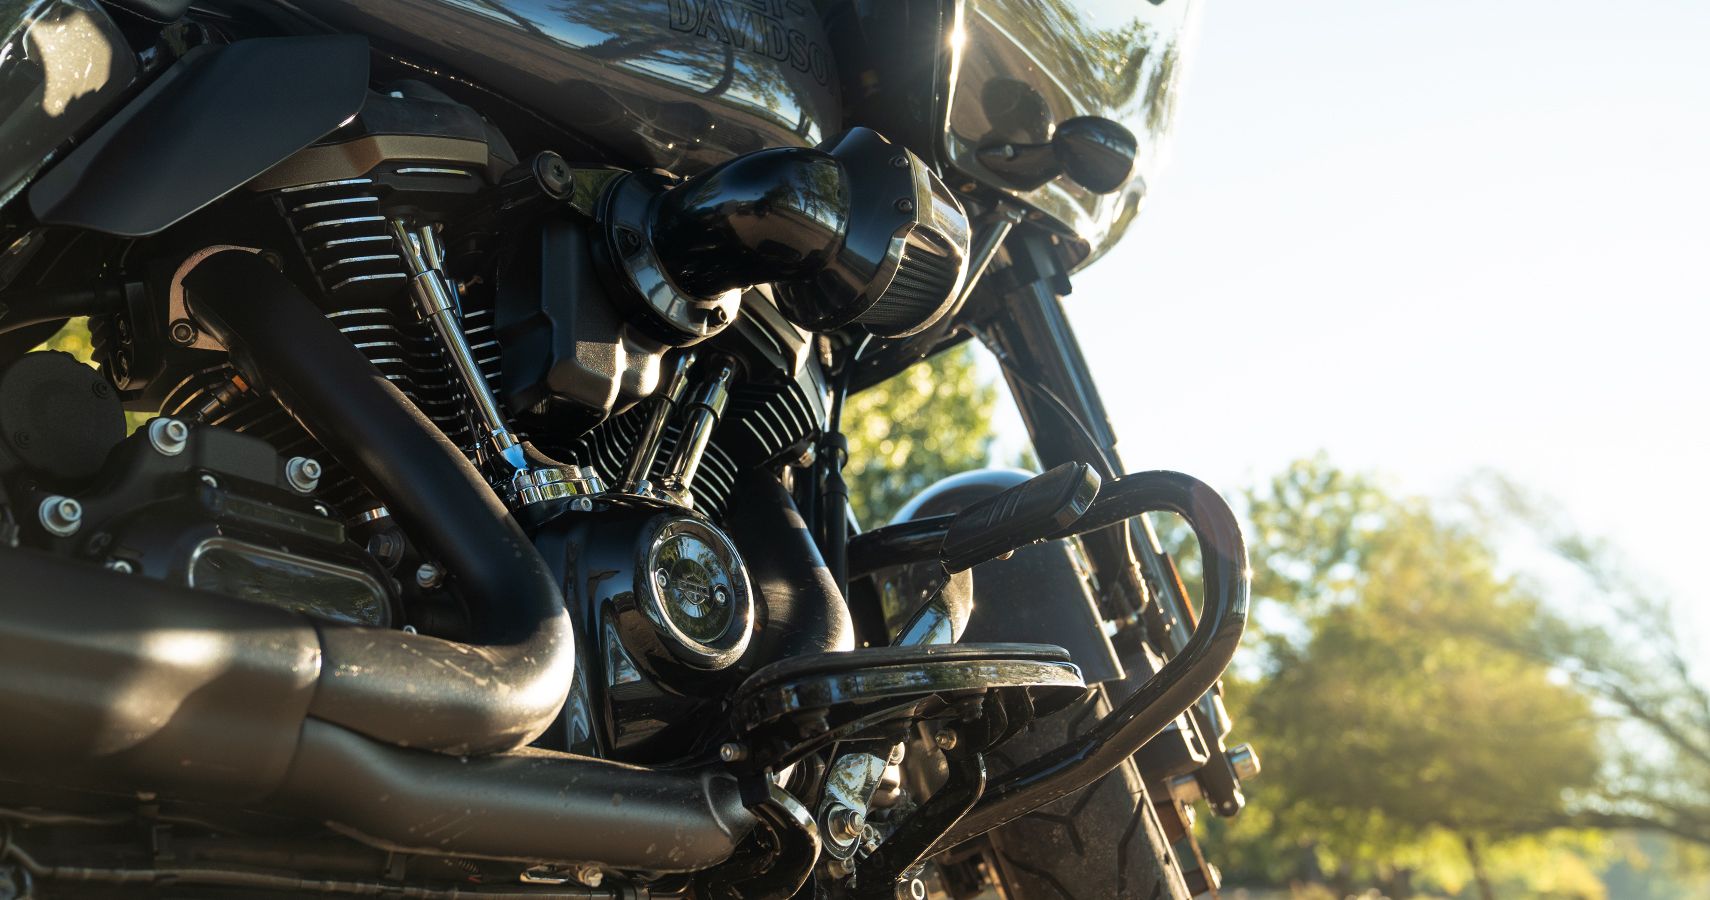 2022 Harley-Davidson Road Glide ST engine